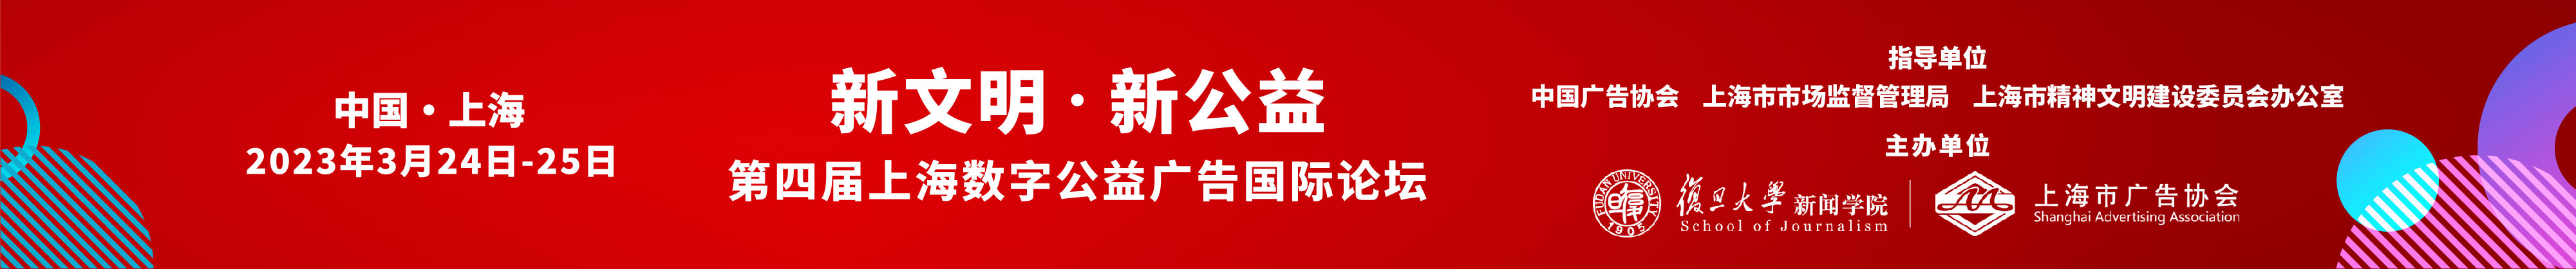 第四届上海数字公益广告国际论坛